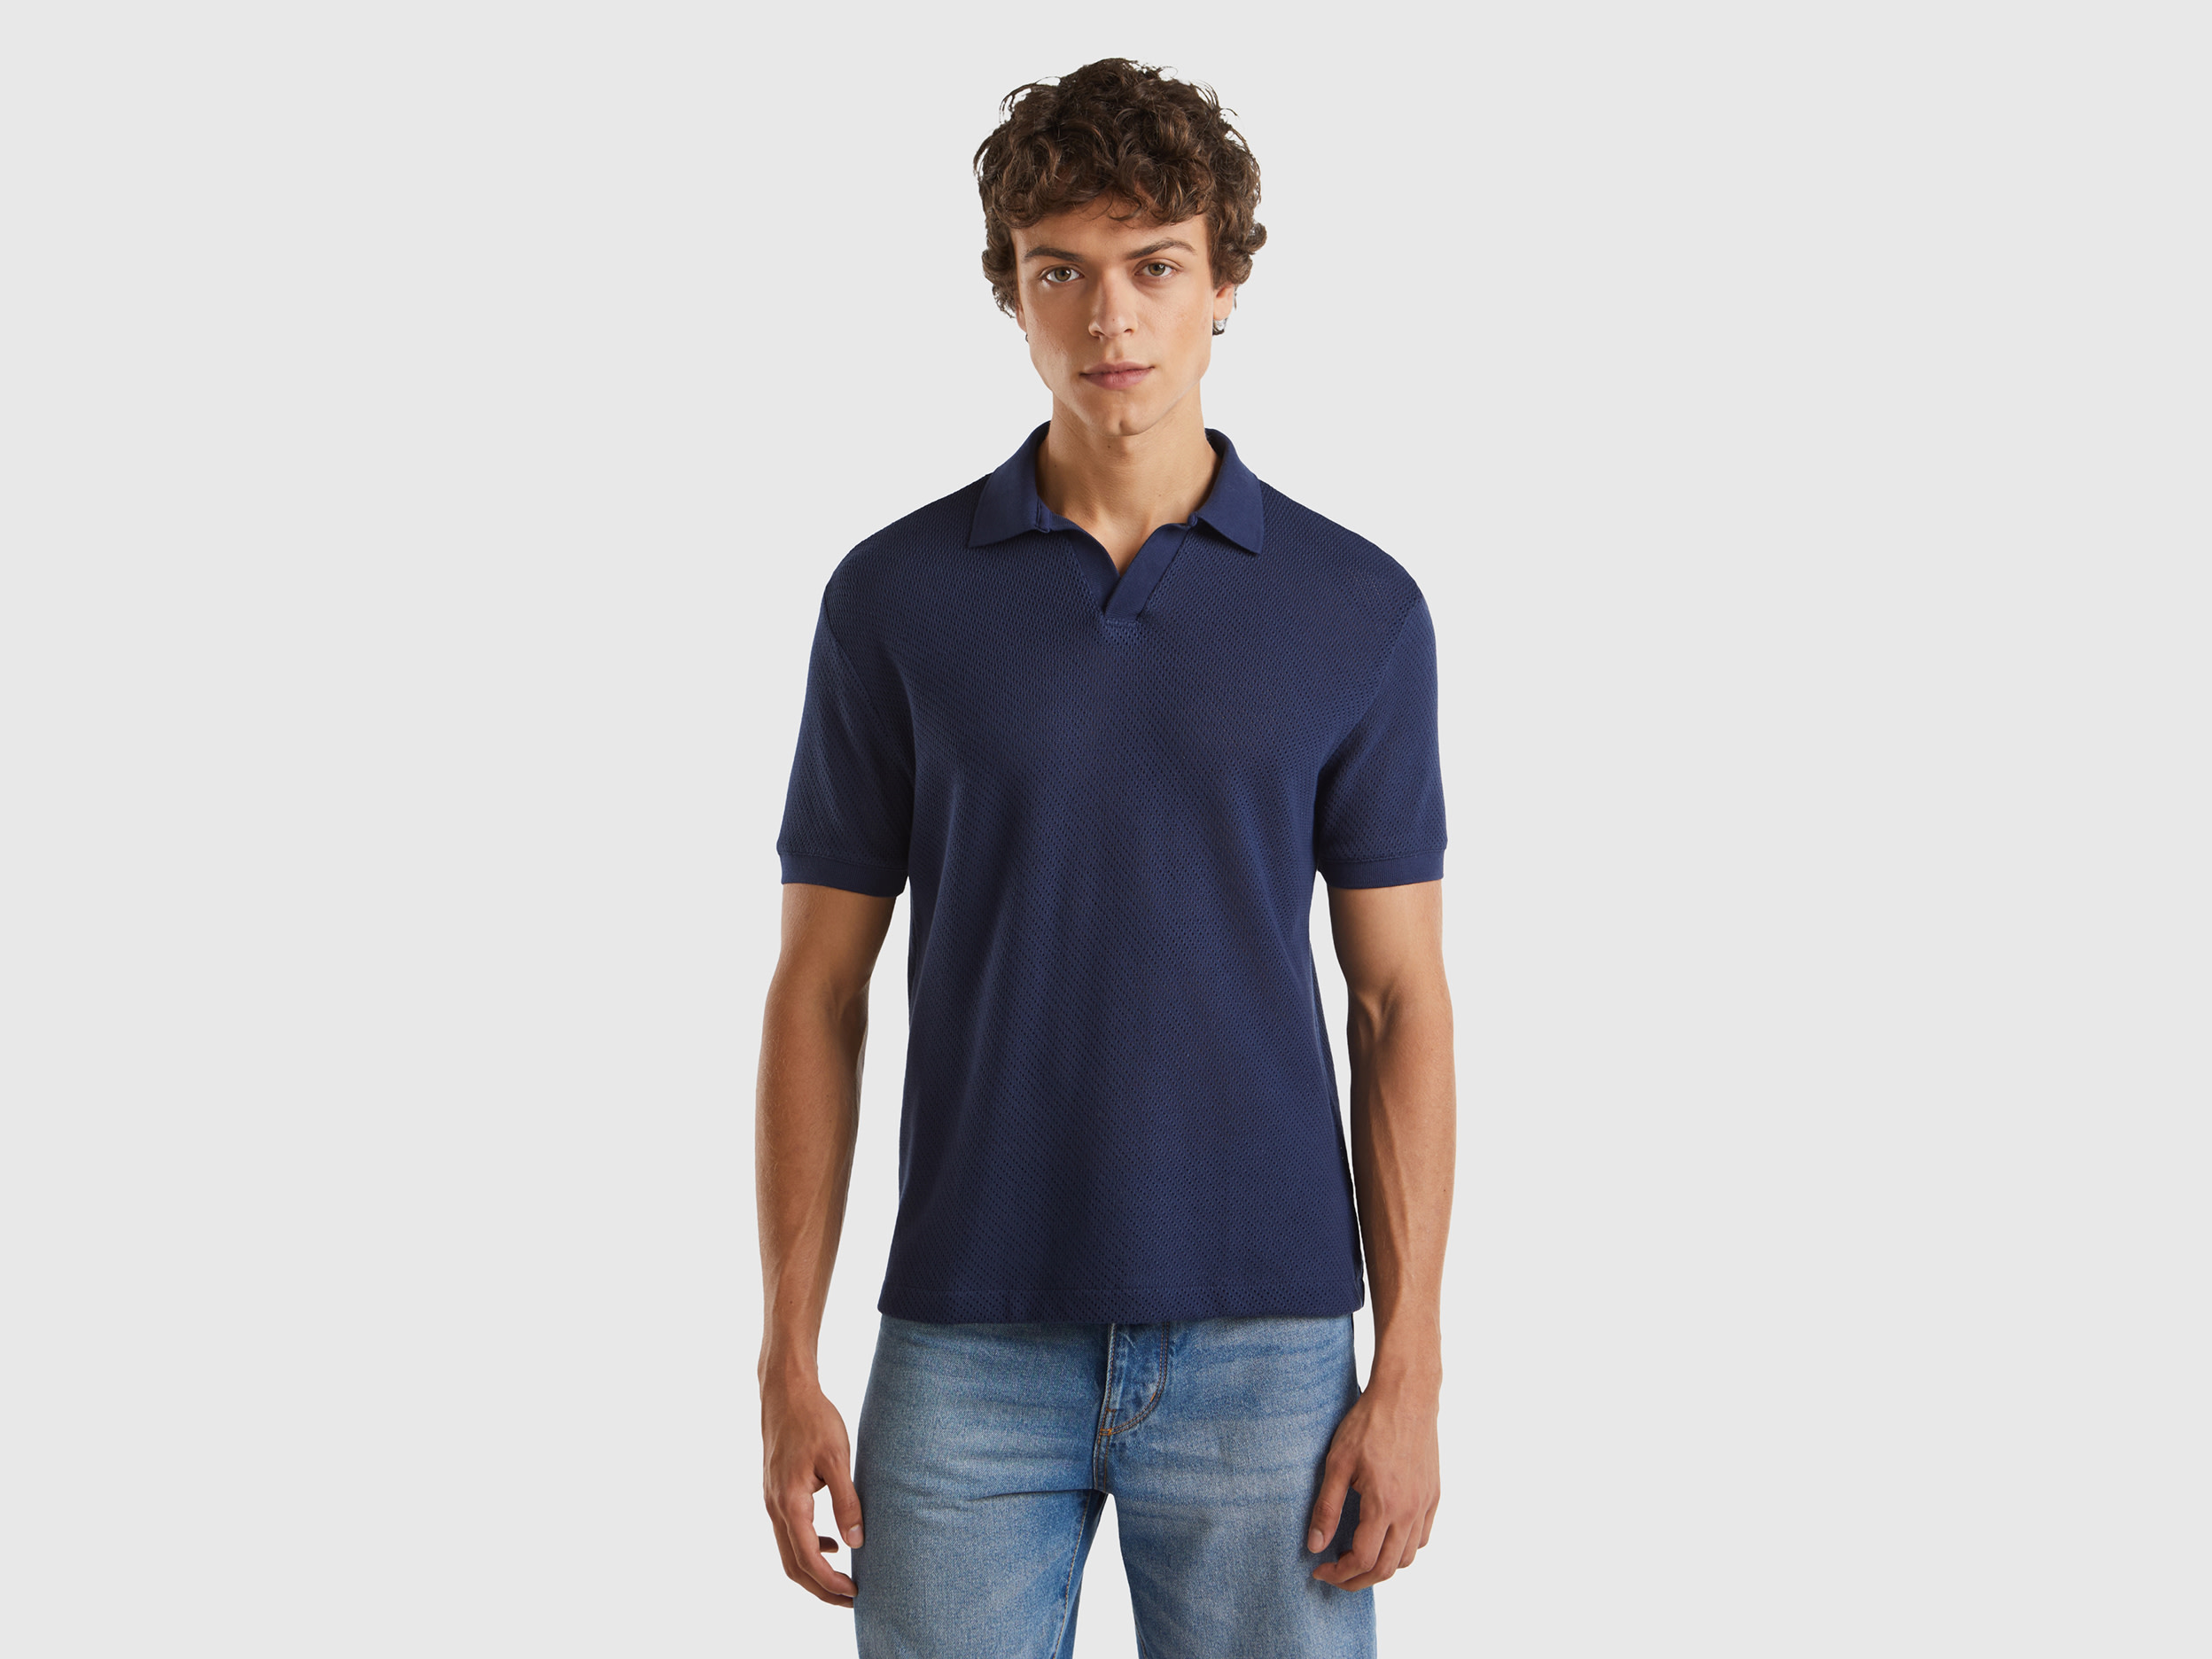 Image of Benetton, Perforated Cotton Polo Shirt, size XXXL, Dark Blue, Men